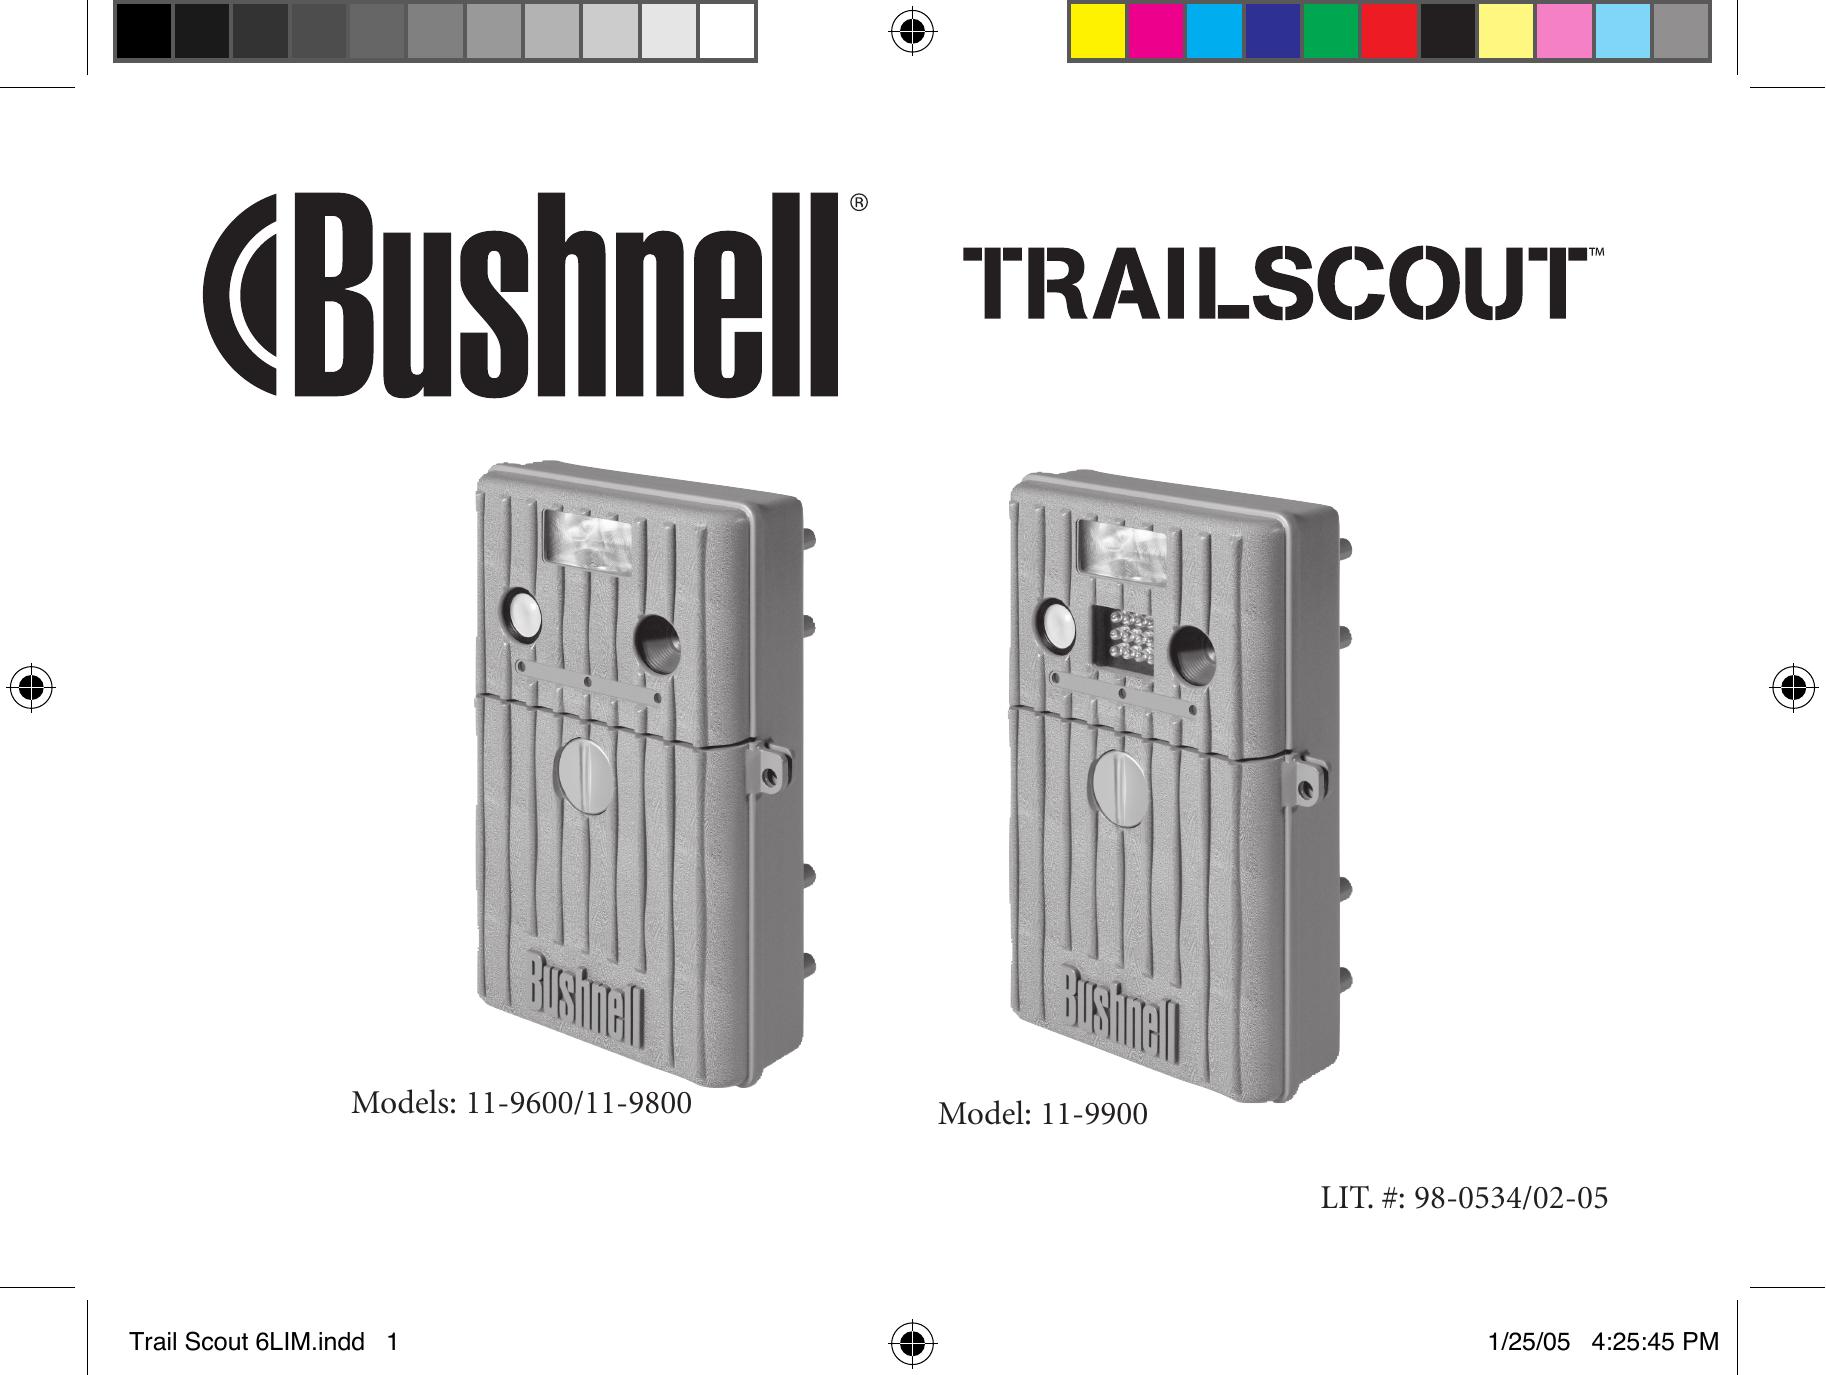 Bushnell Nov-00 Digital Camera User Manual